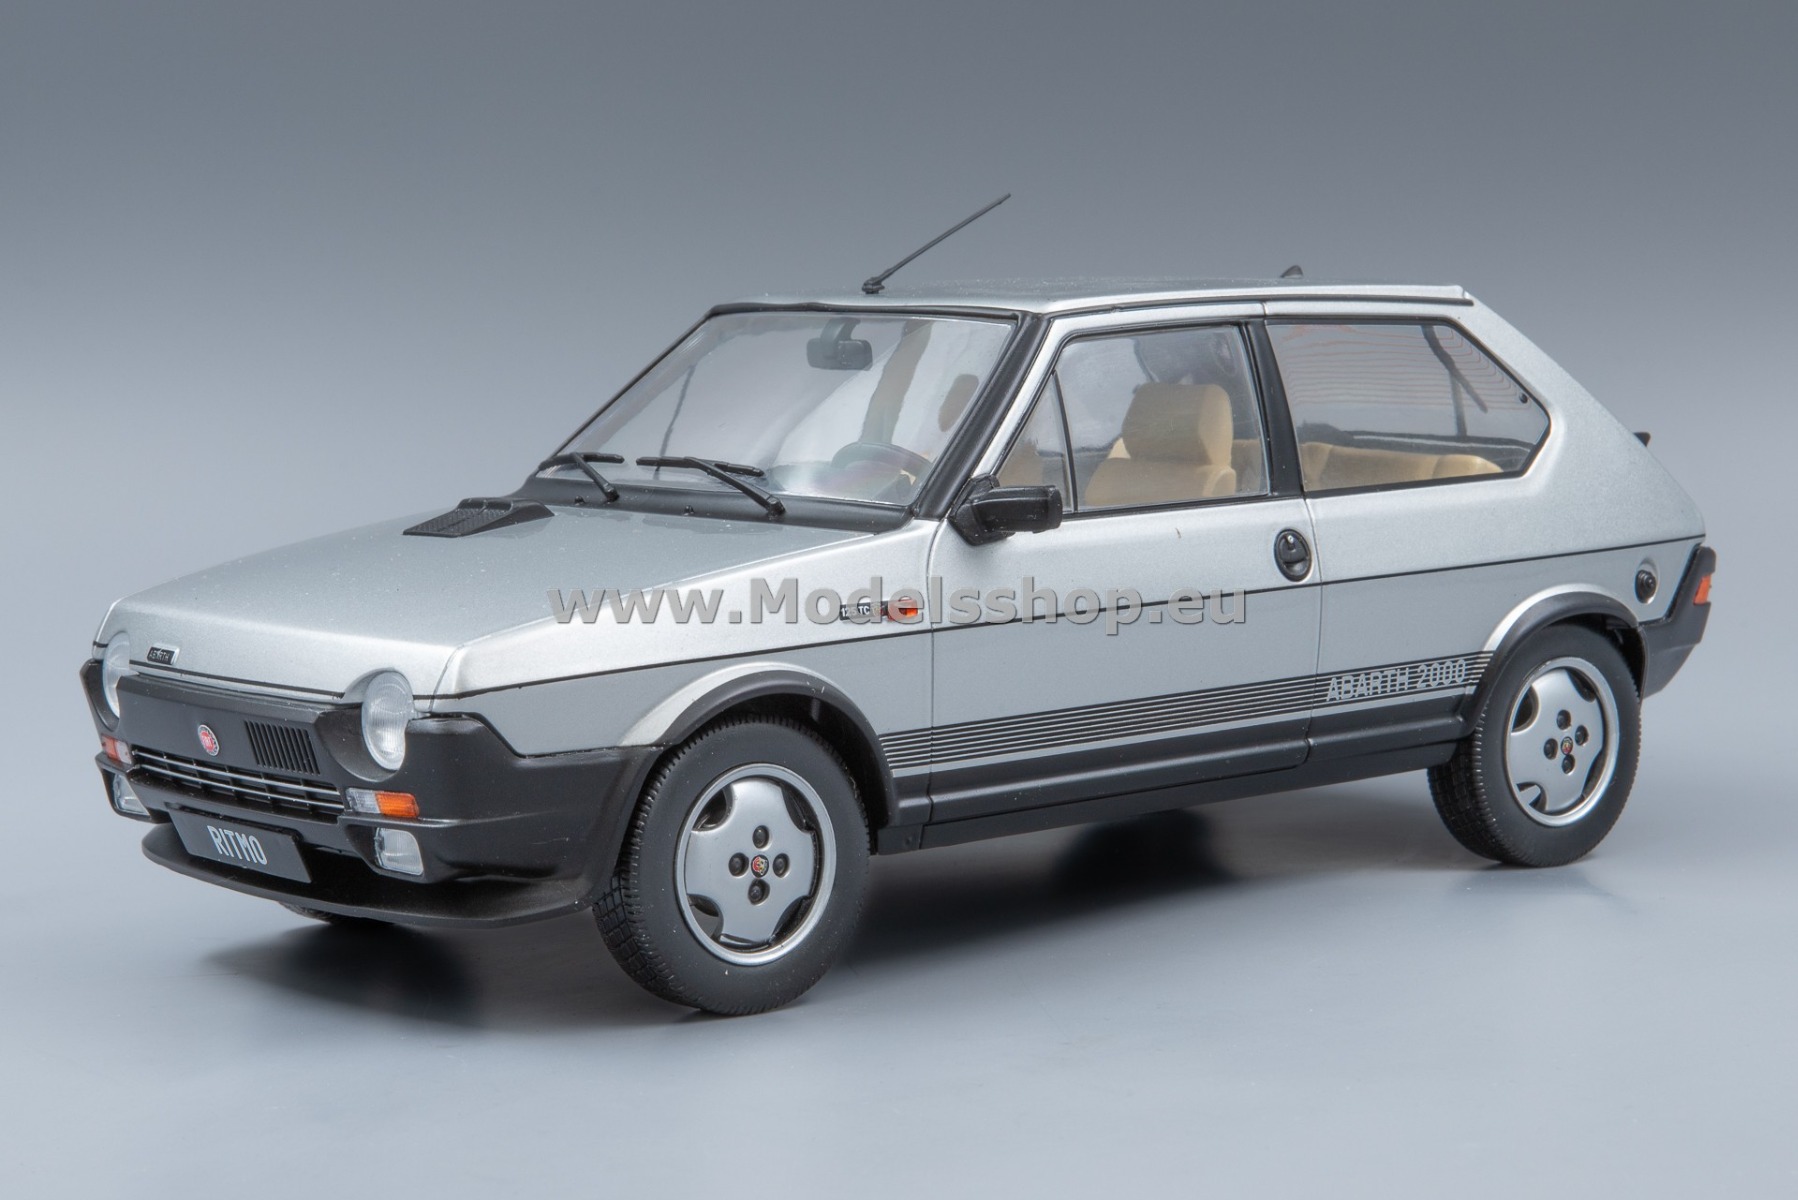 MCG 18417 Fiat Ritmo TC 125 Abarth, 1980 /silver/